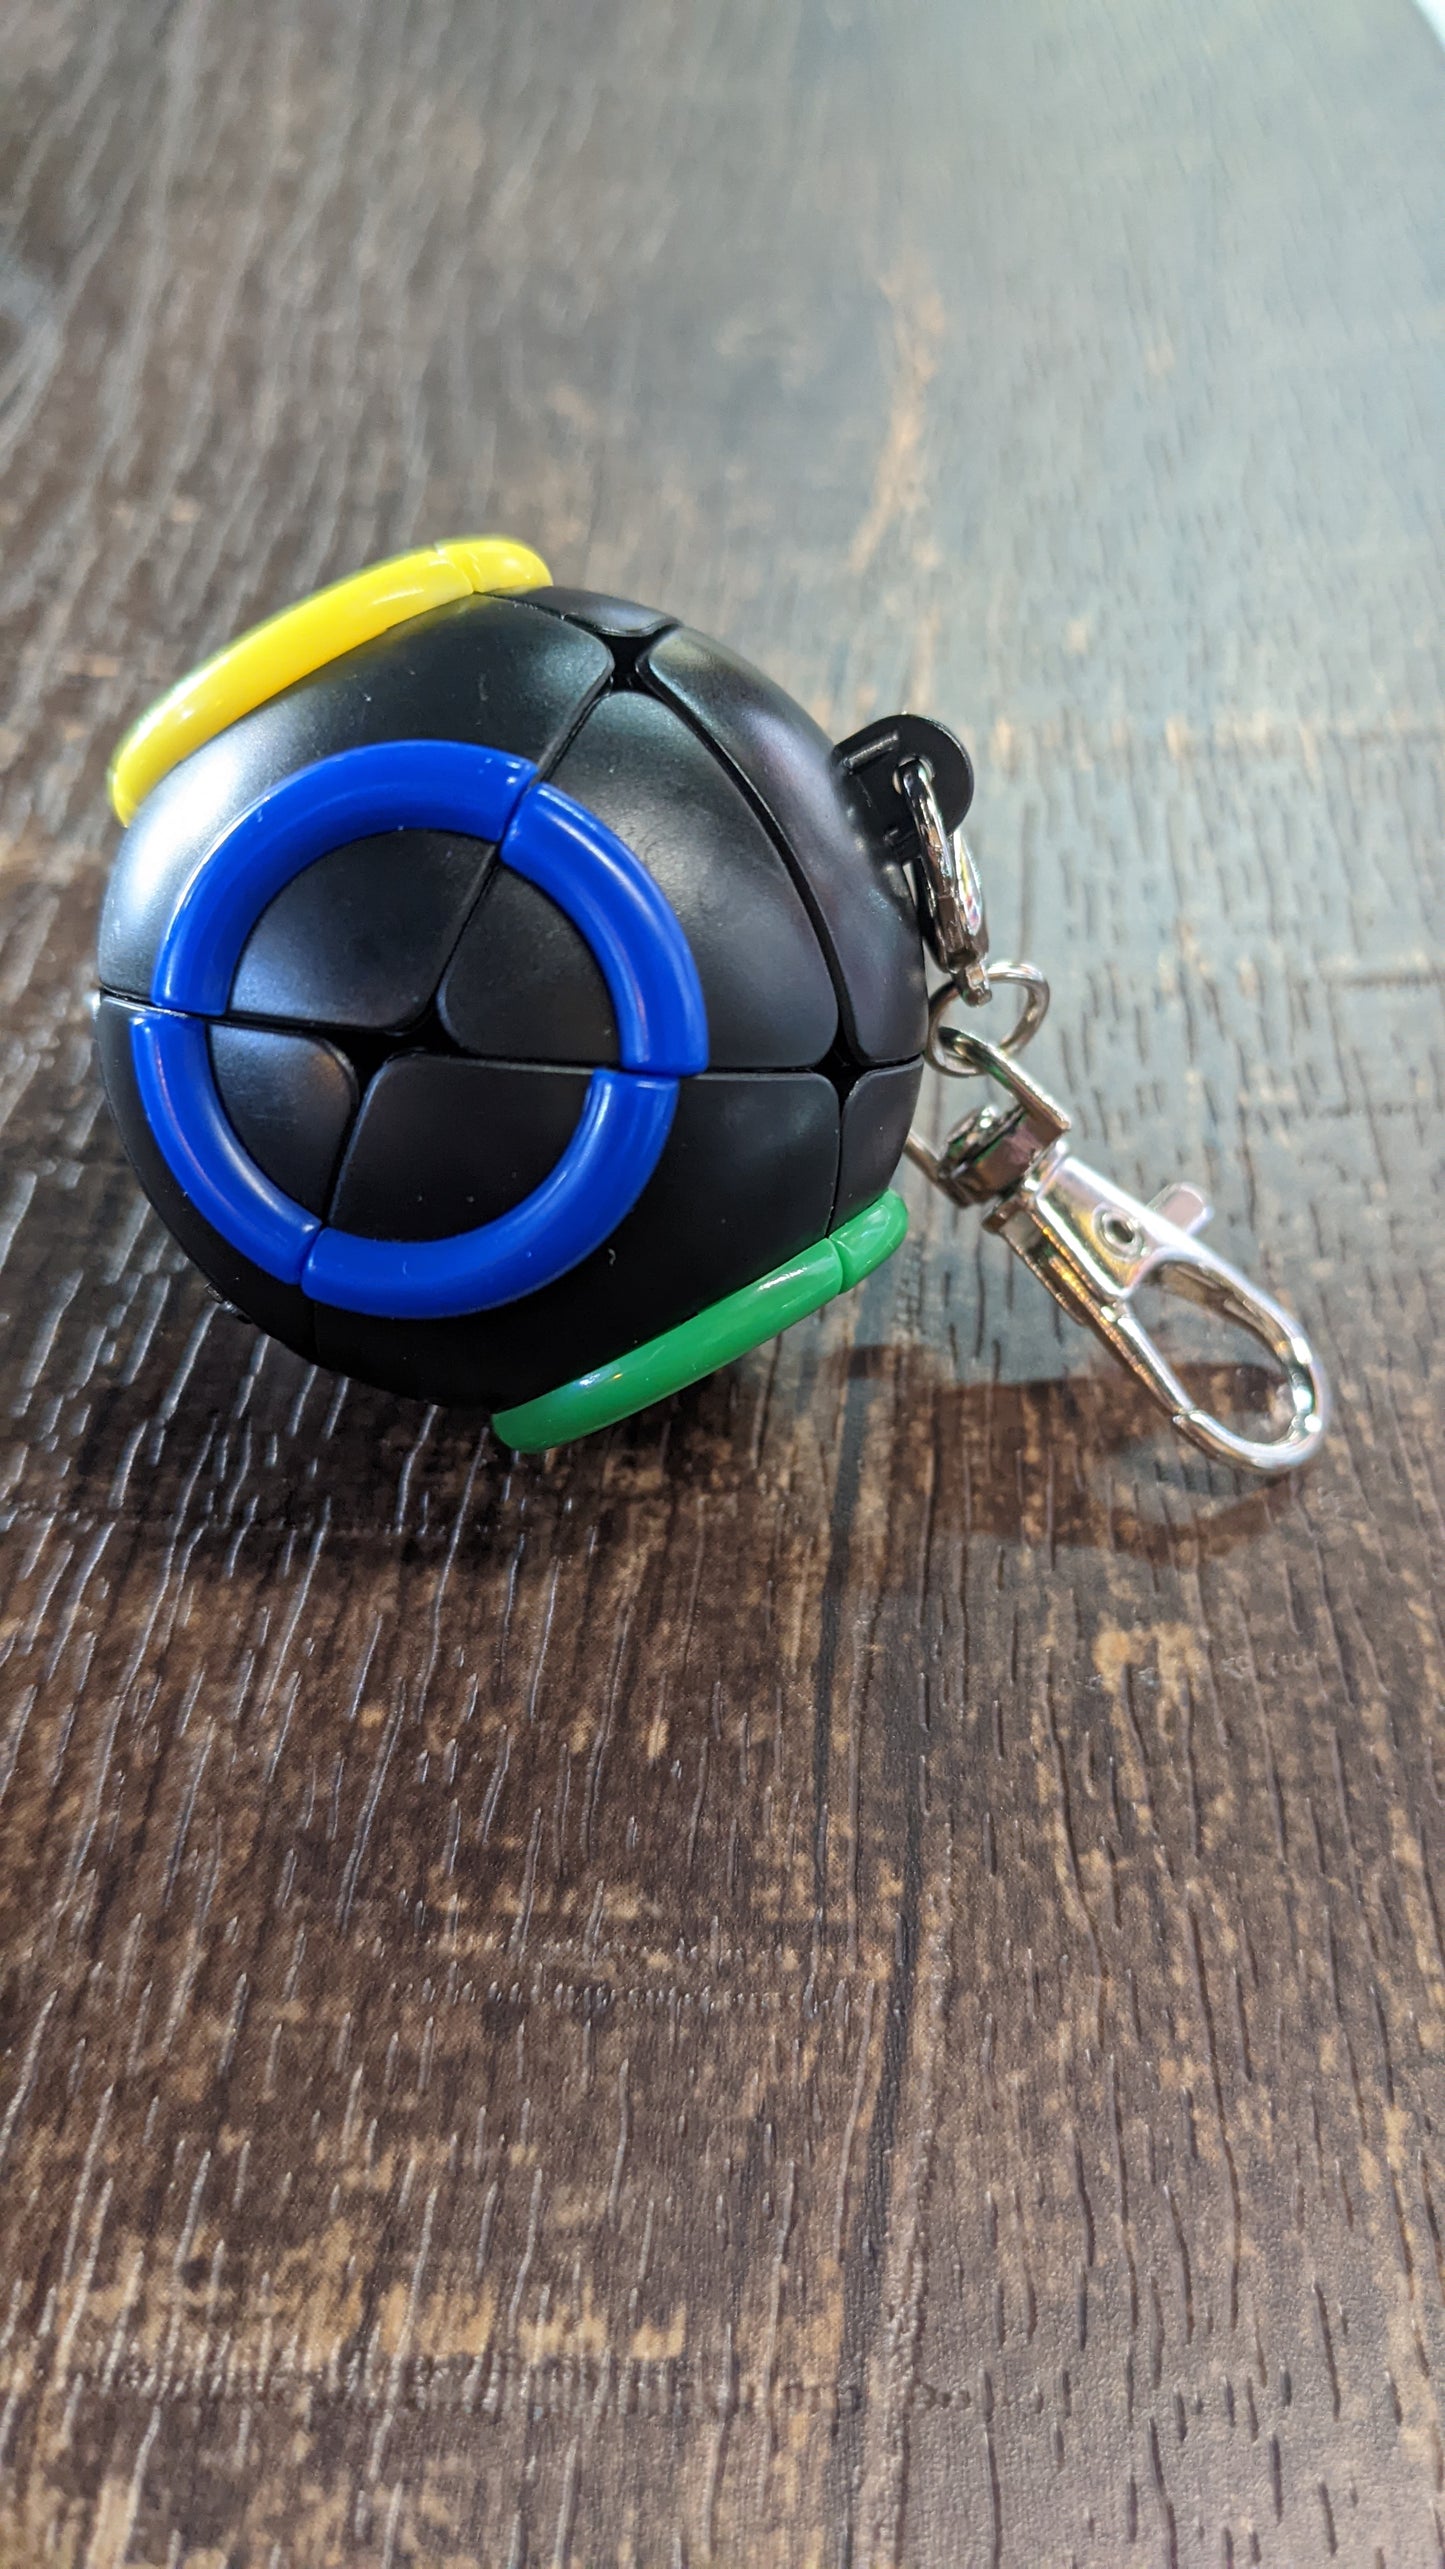 Twist and Turn Rubix cube keychain "Divers Helmet" Mini